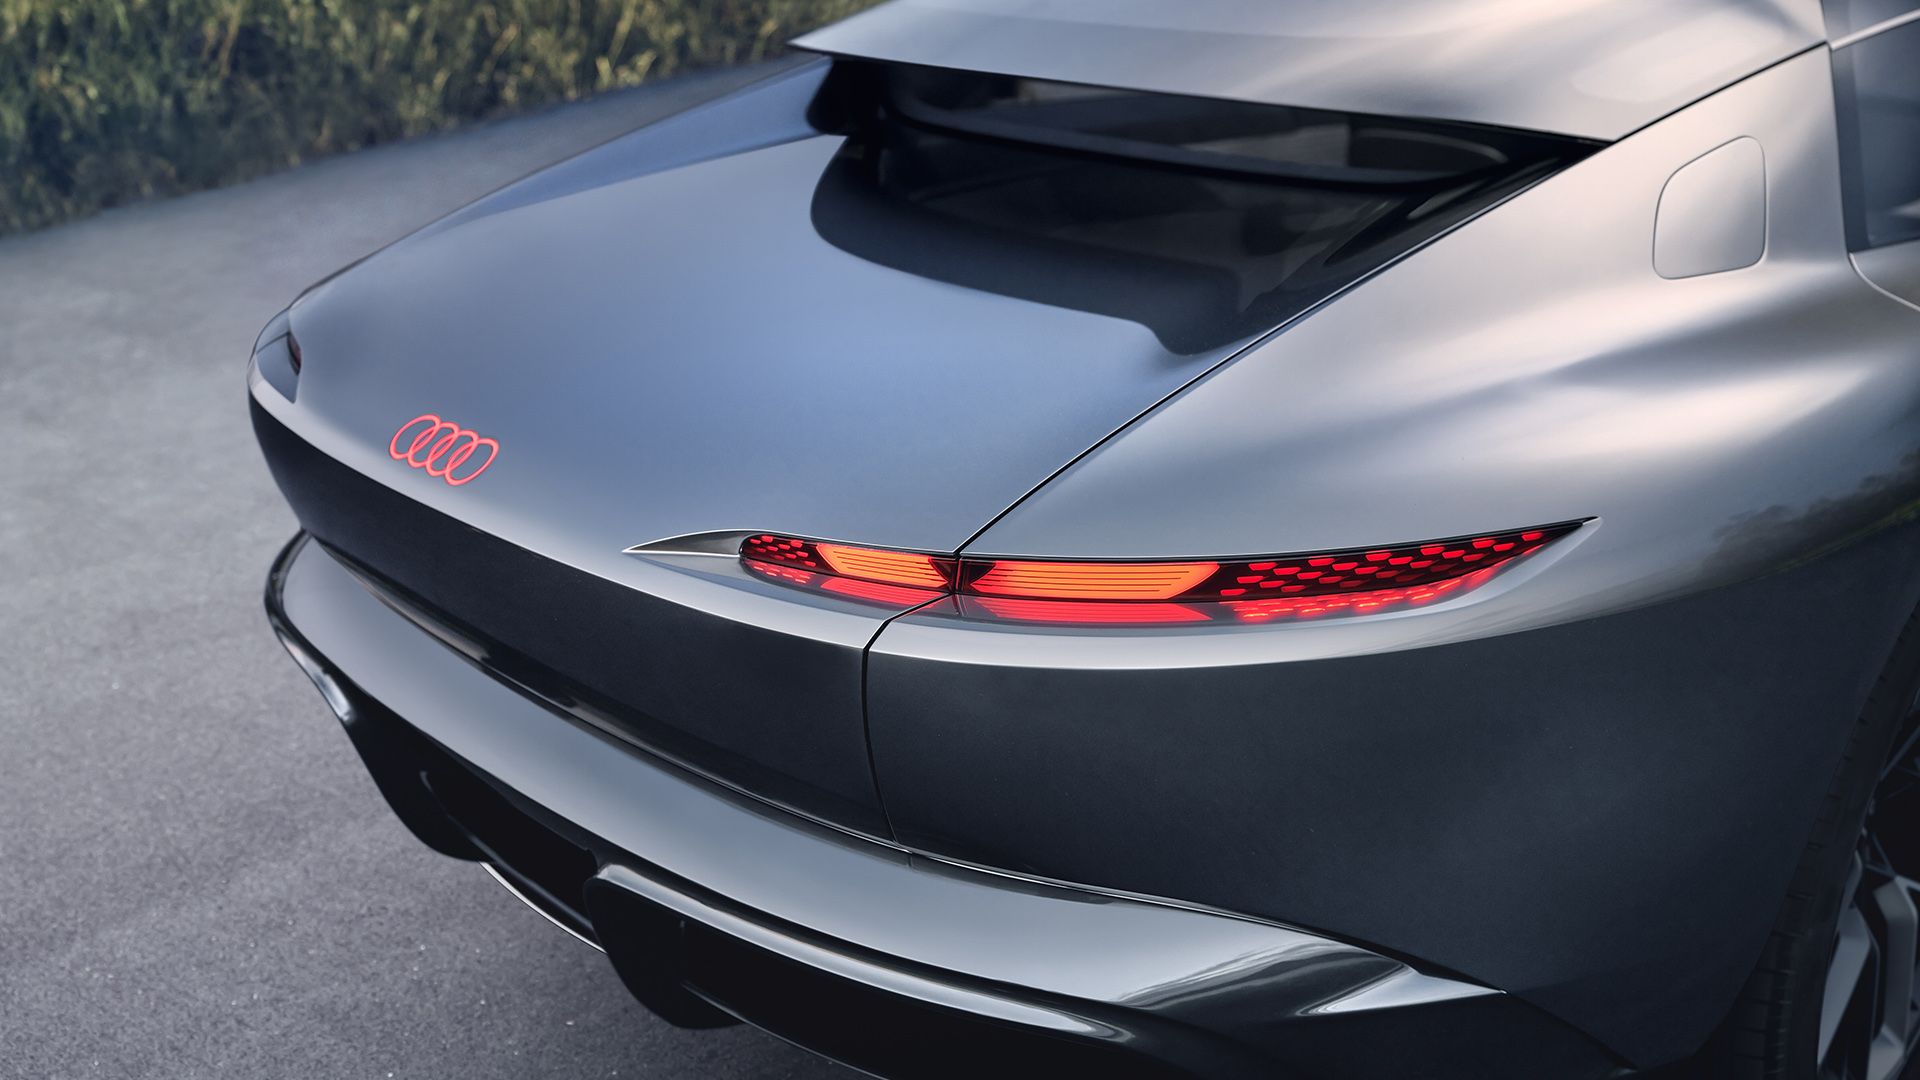 Zicht op de achterlichten van de Audi grandsphere concept.